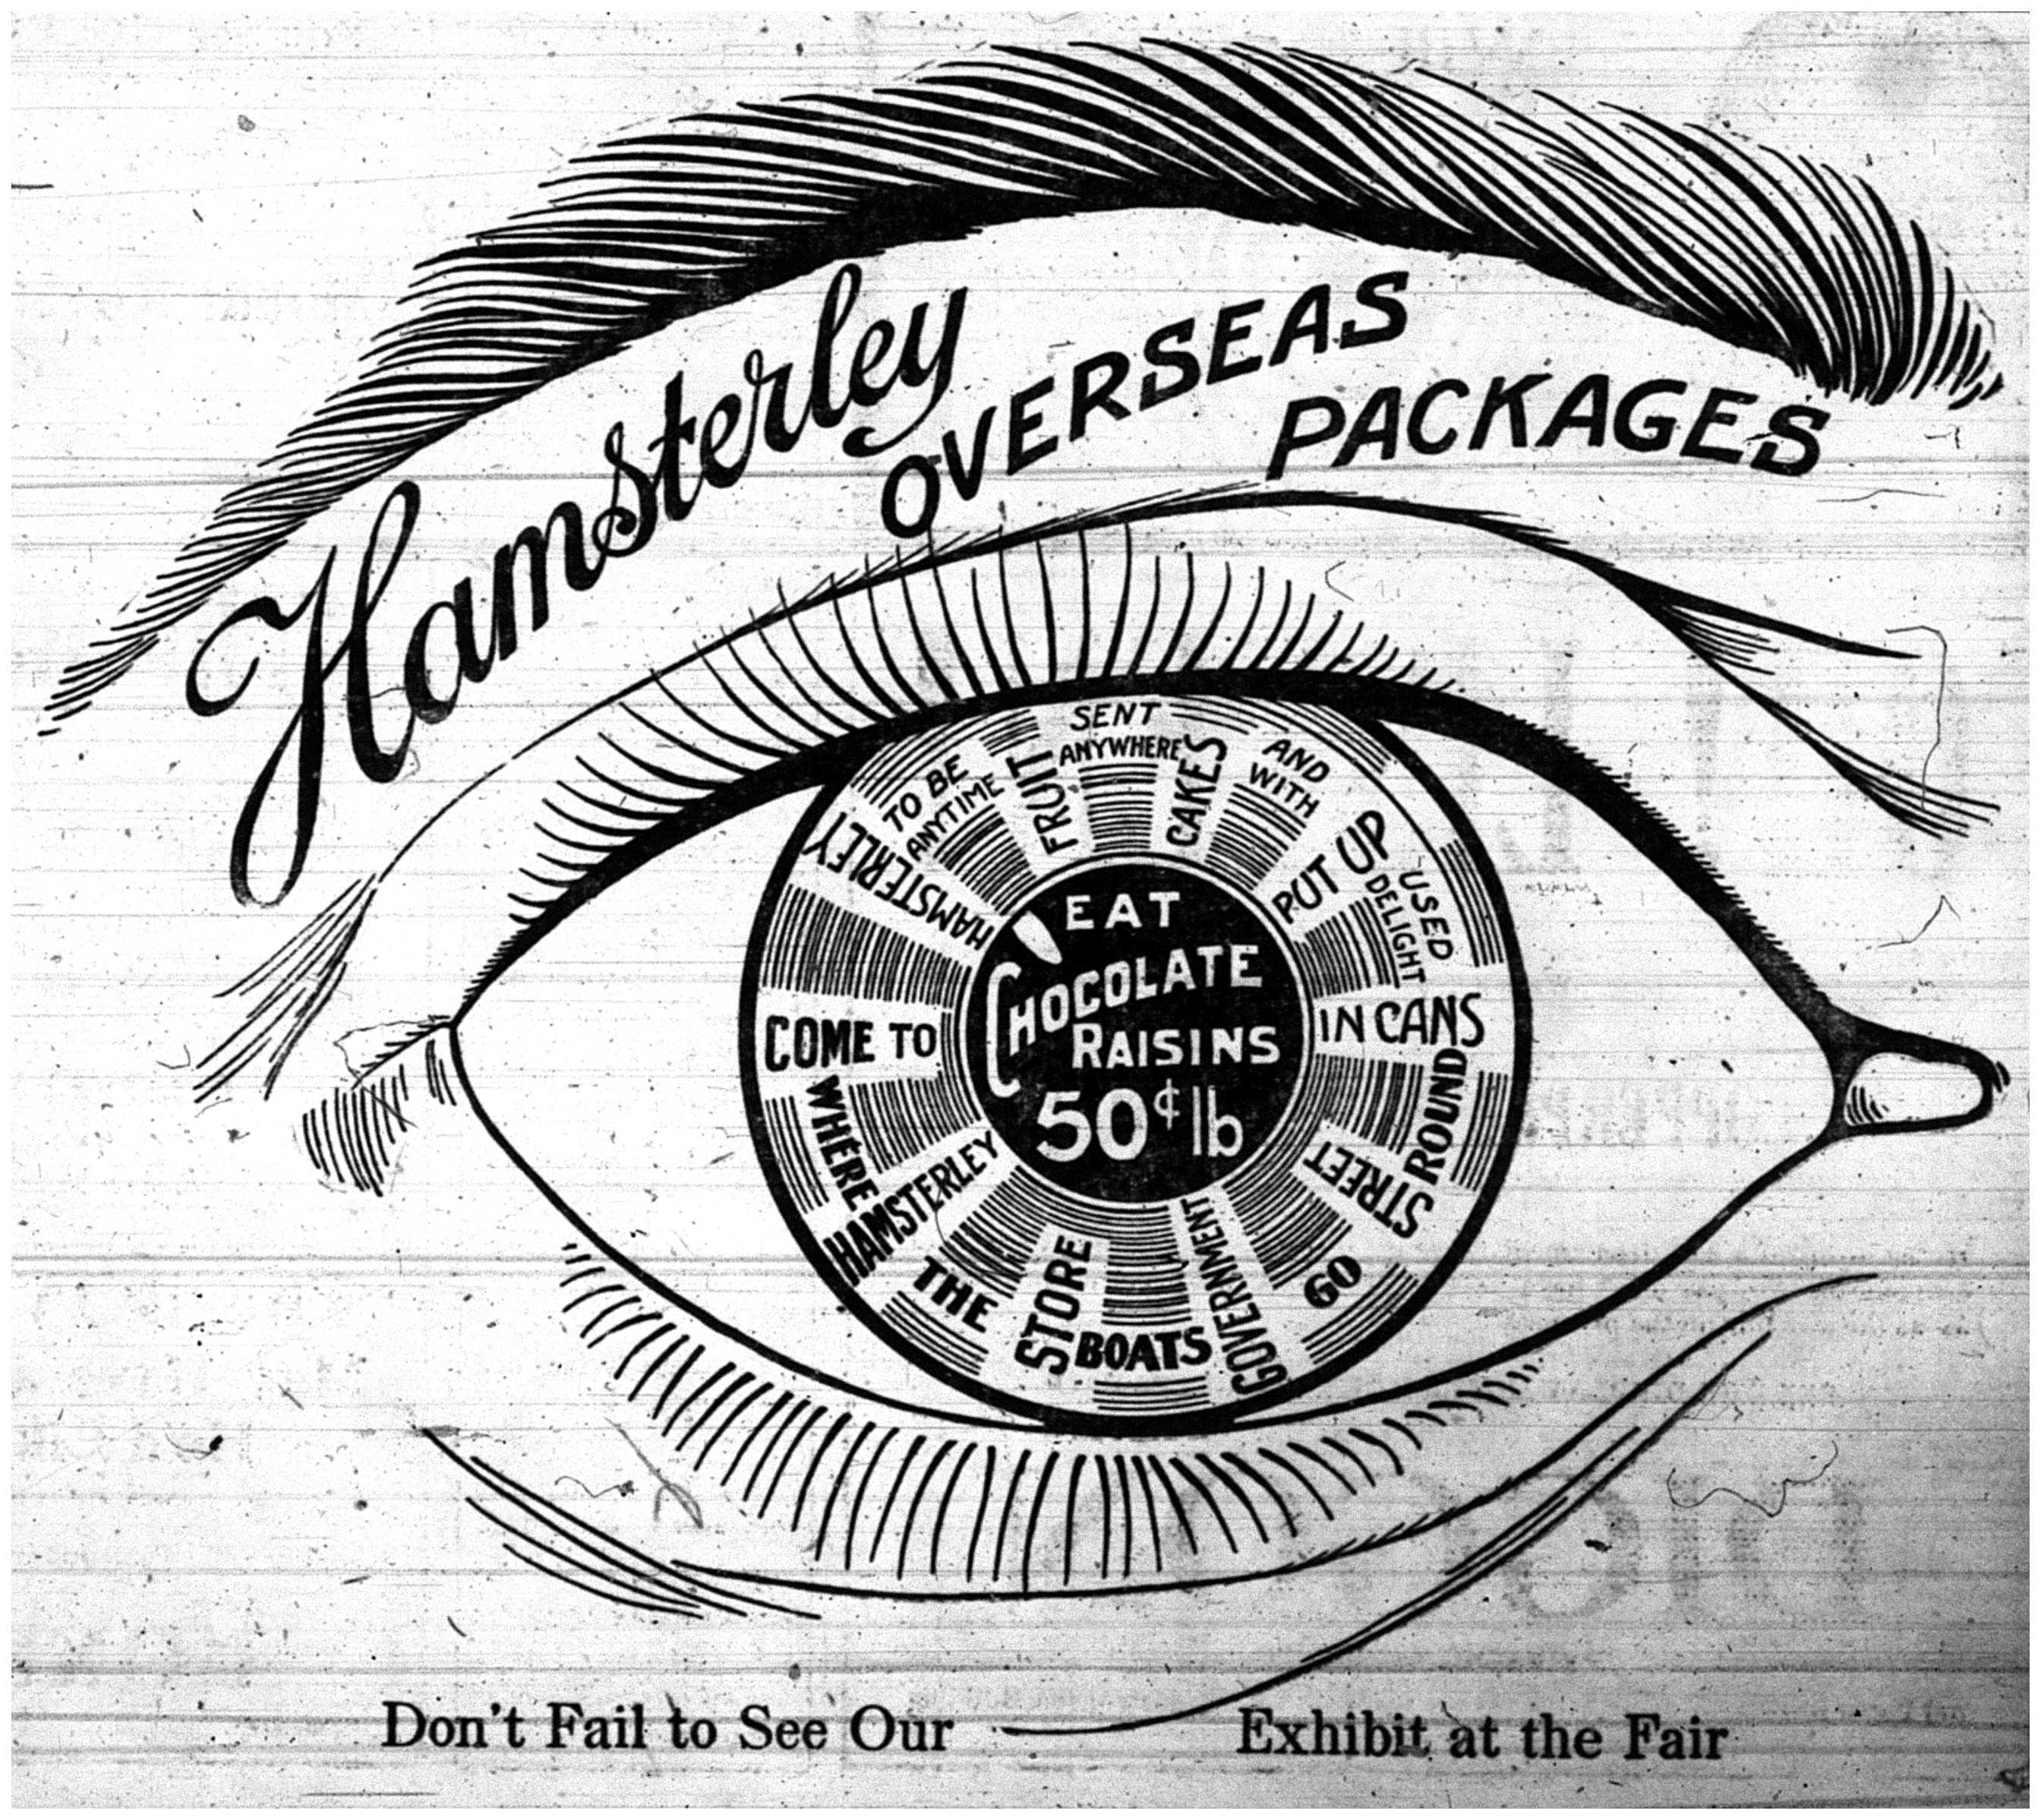 "Hamsterley Overseas Packages"